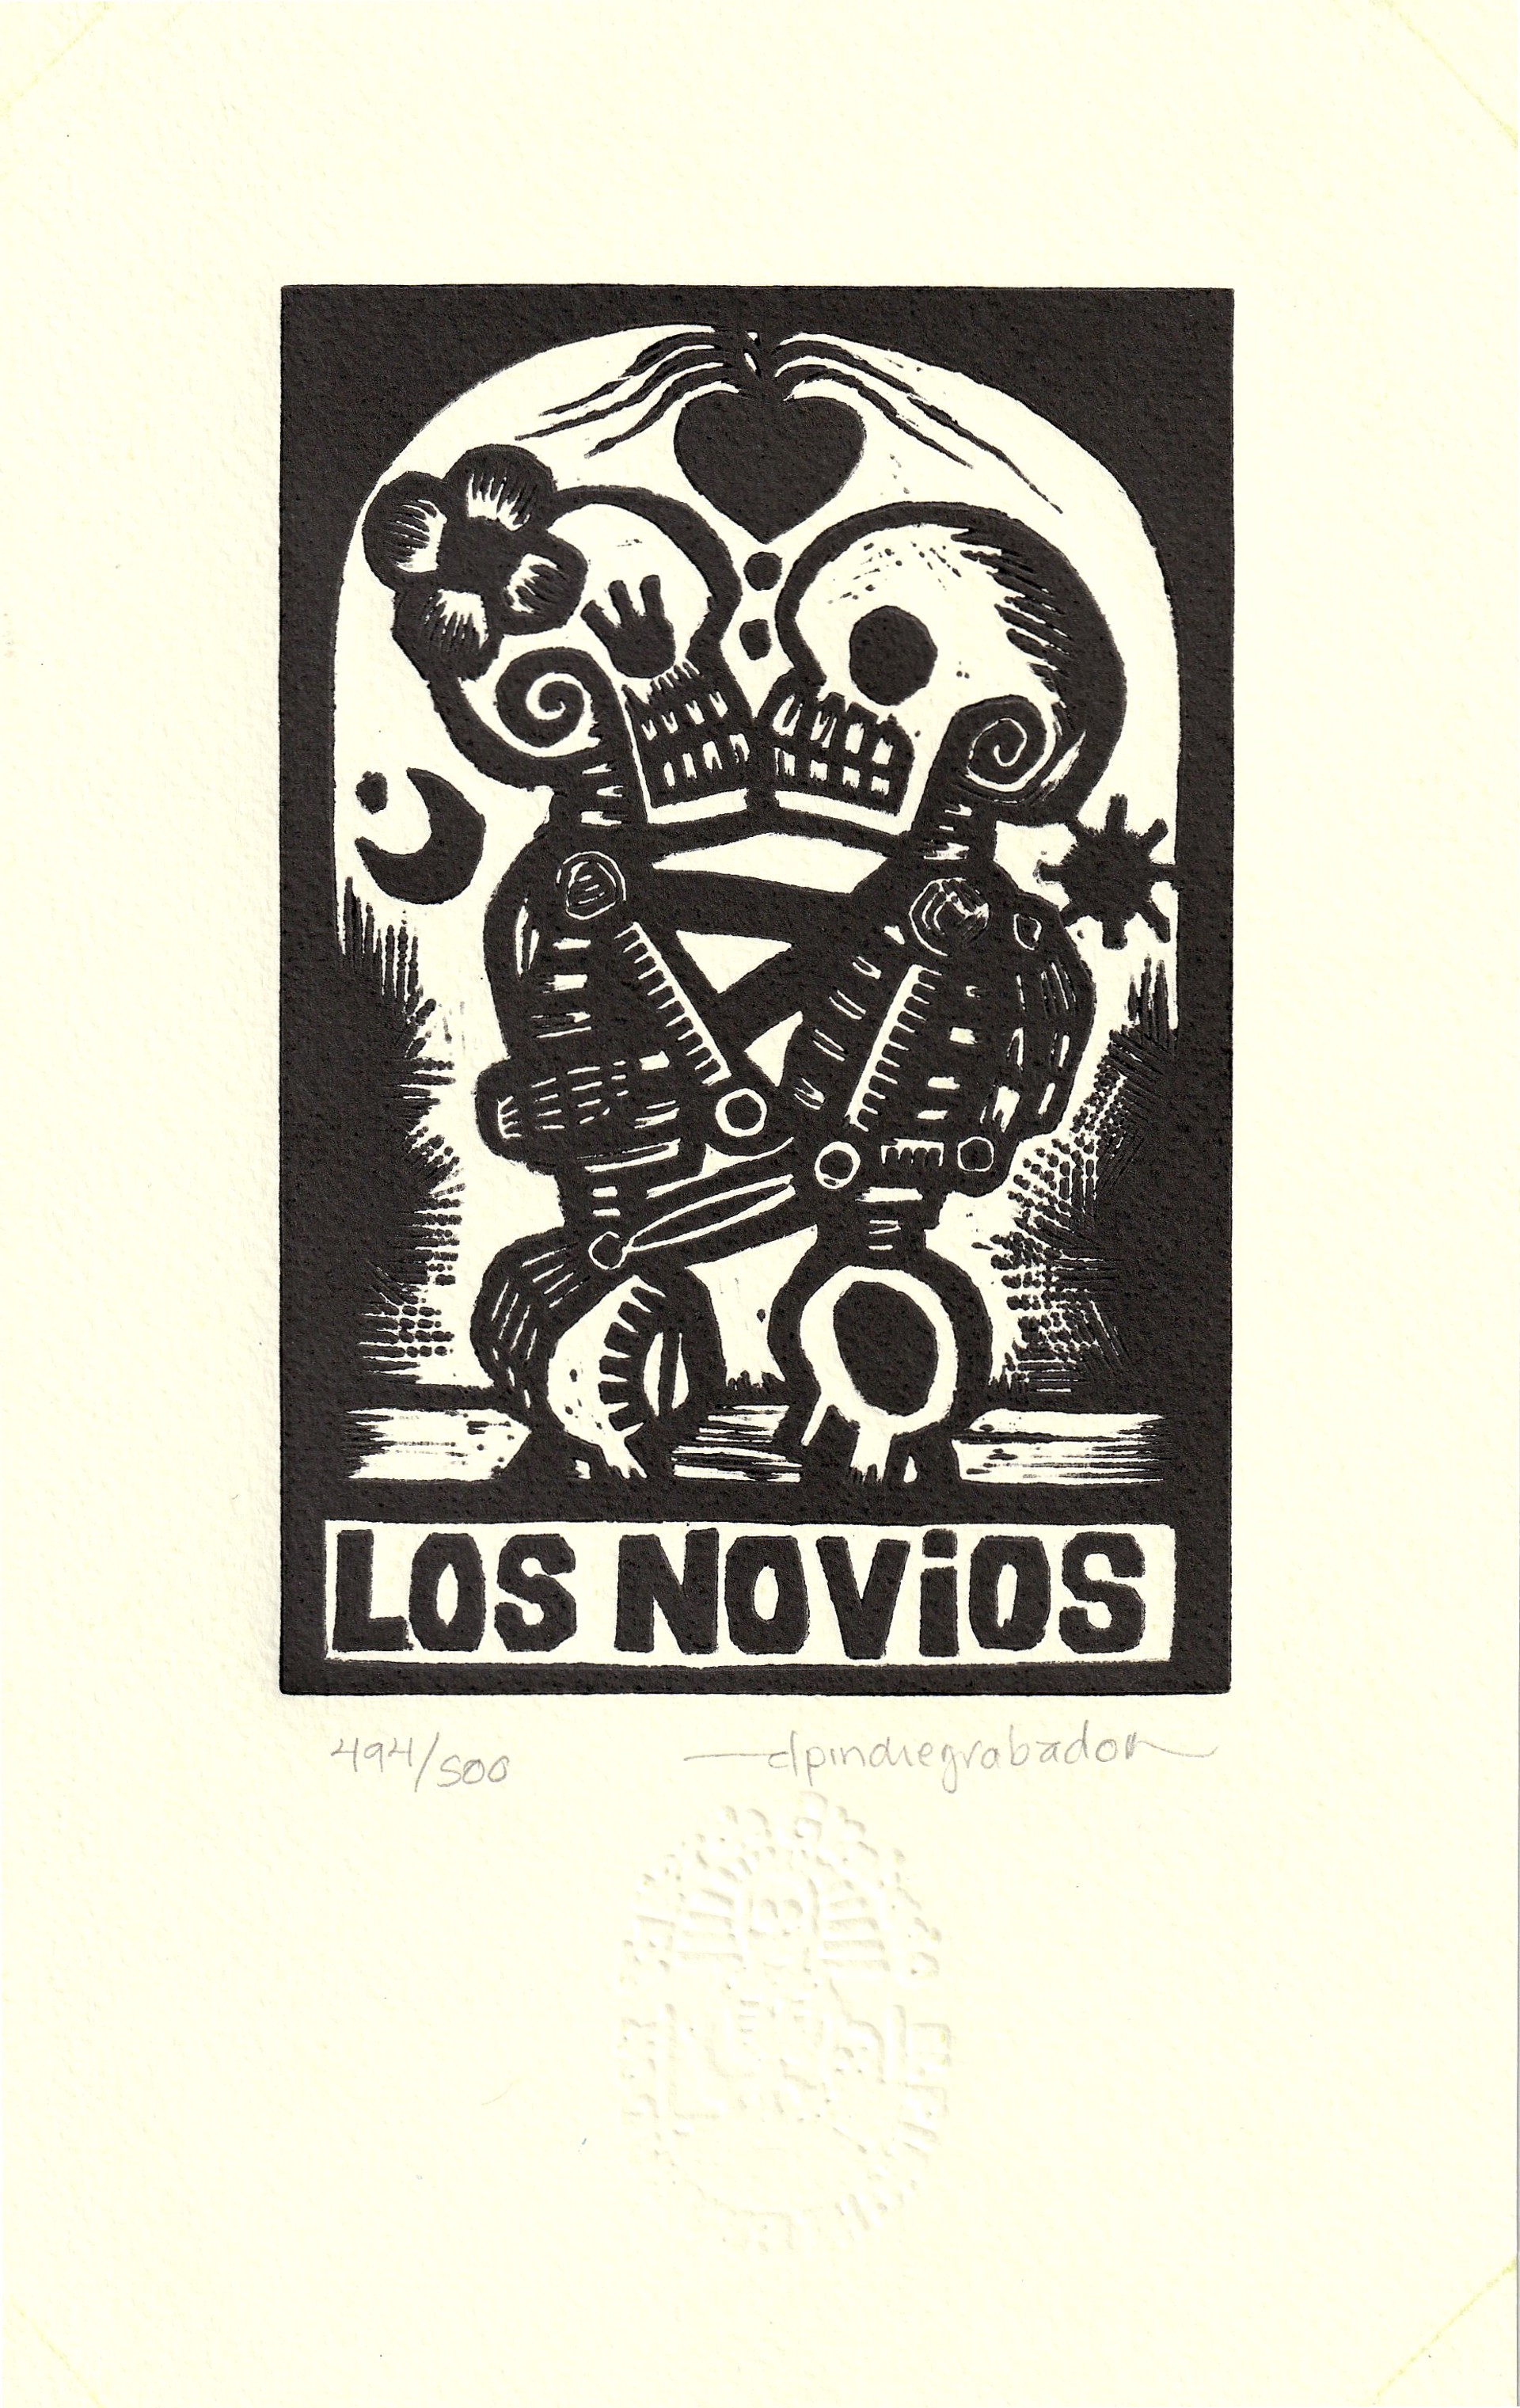 Los Novios by El Pinche Grabador